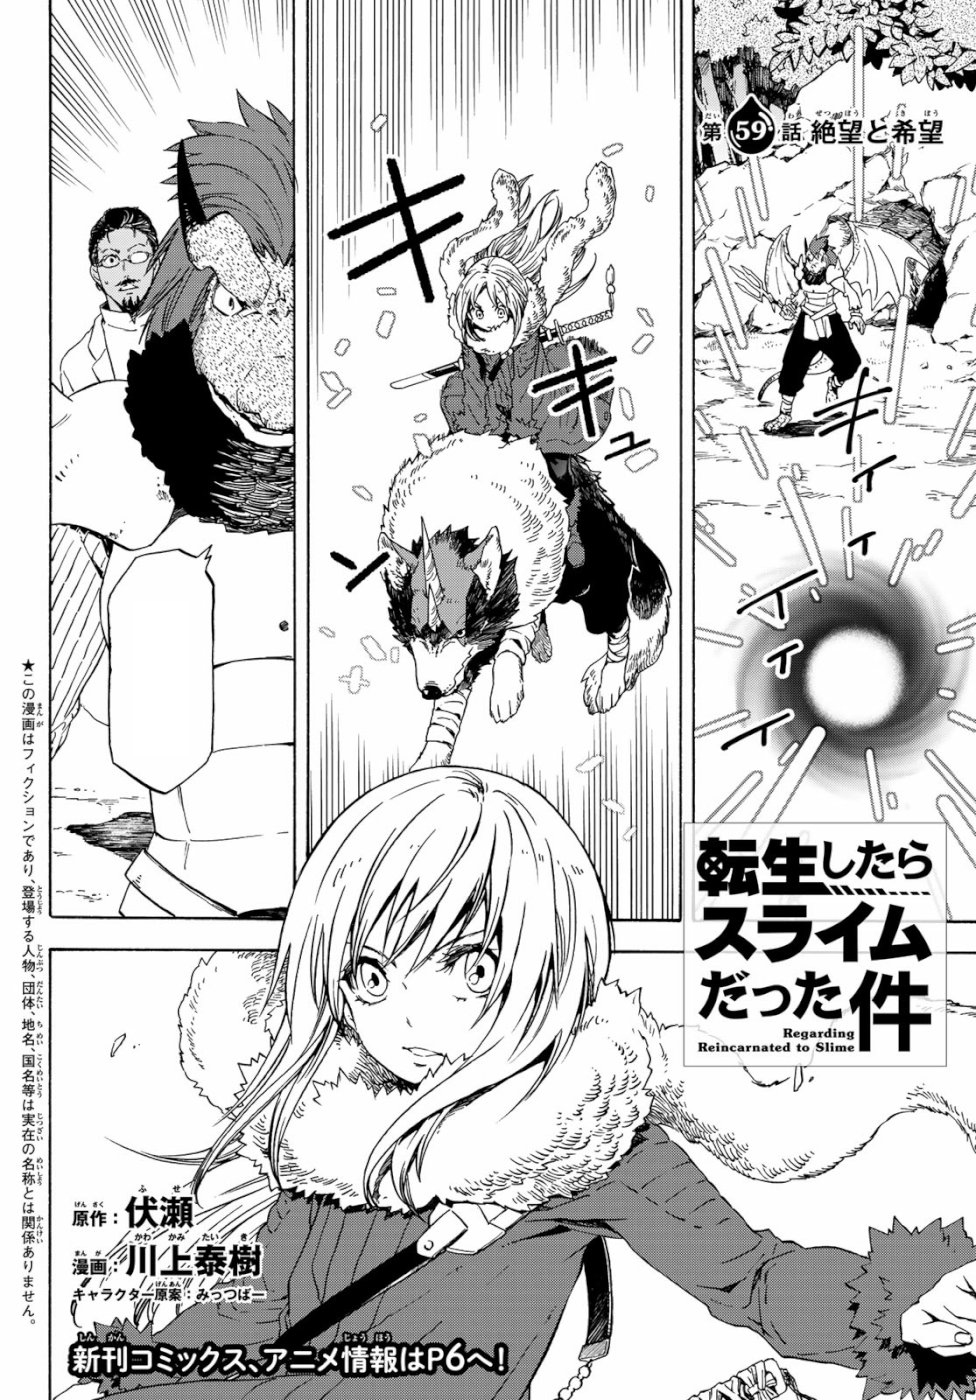 Tenchura! Volume 3, Tensei Shitara Slime Datta Ken Wiki